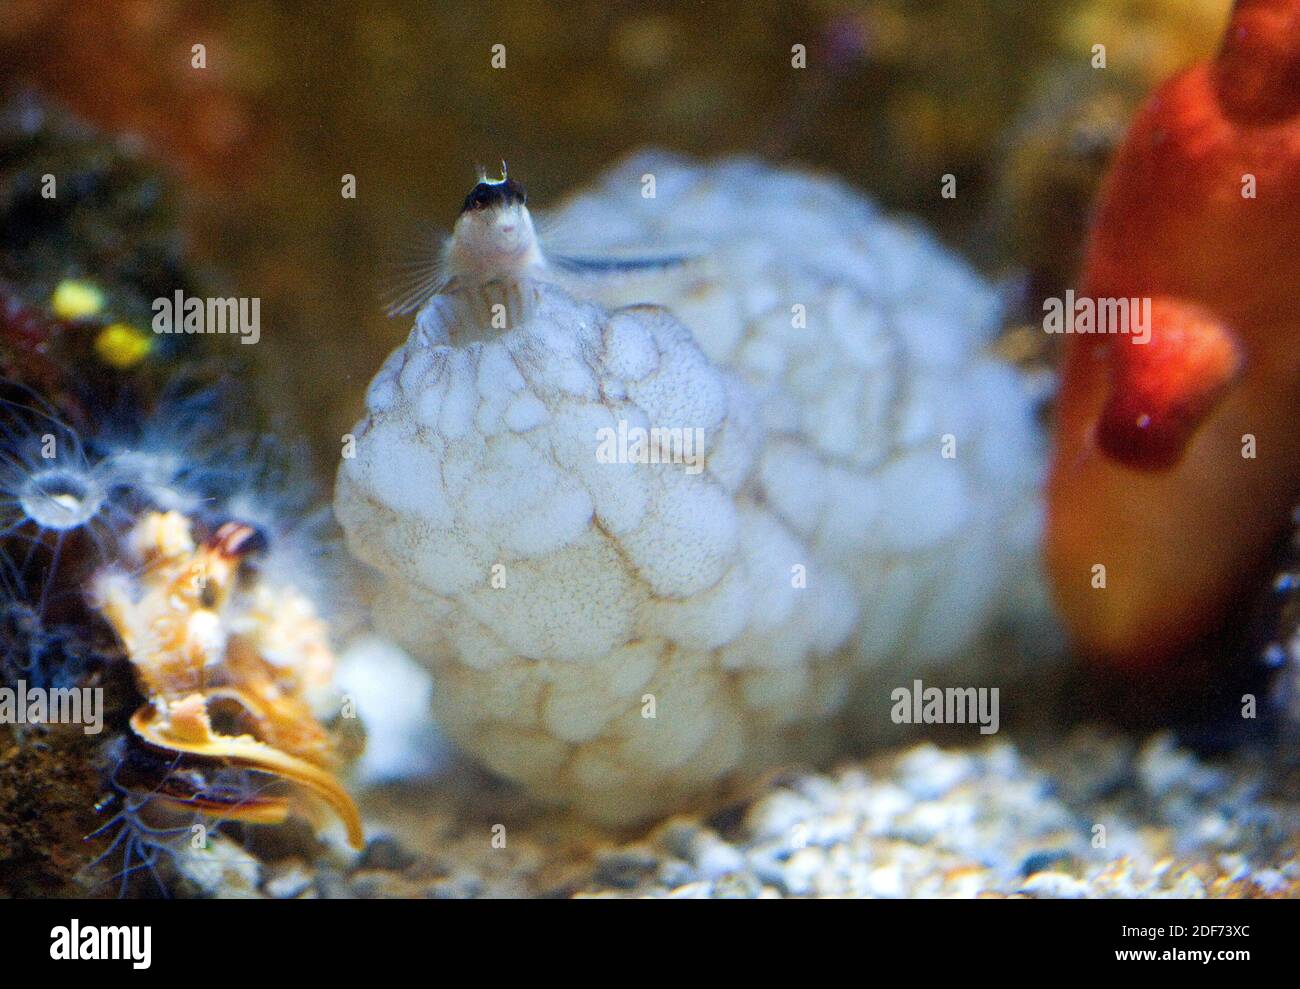 Lo squirt di mare bianco (Phallusia mammillata) è un filtro di Ascidiacea nativo del Mar Mediterraneo e dell'Oceano Atlantico nordorientale. A destra un altro Foto Stock